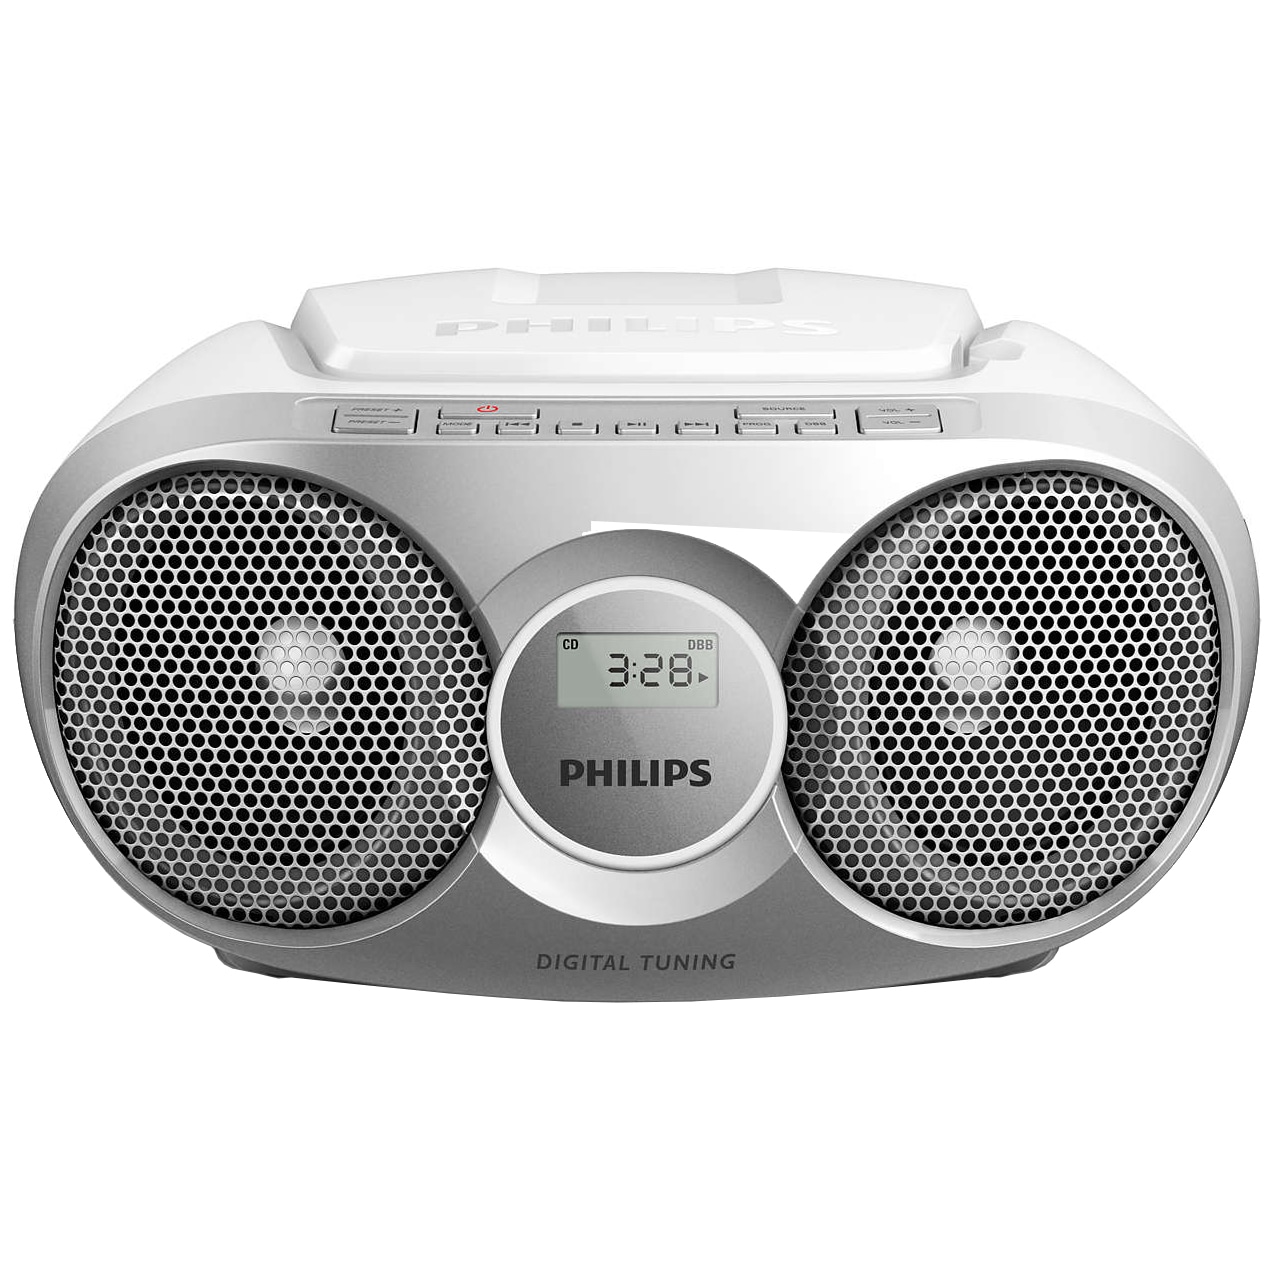 Philips CD-spelare /FM-radio AZ215S/12 (silver) - FM-radio & Digitalradio -  Elgiganten